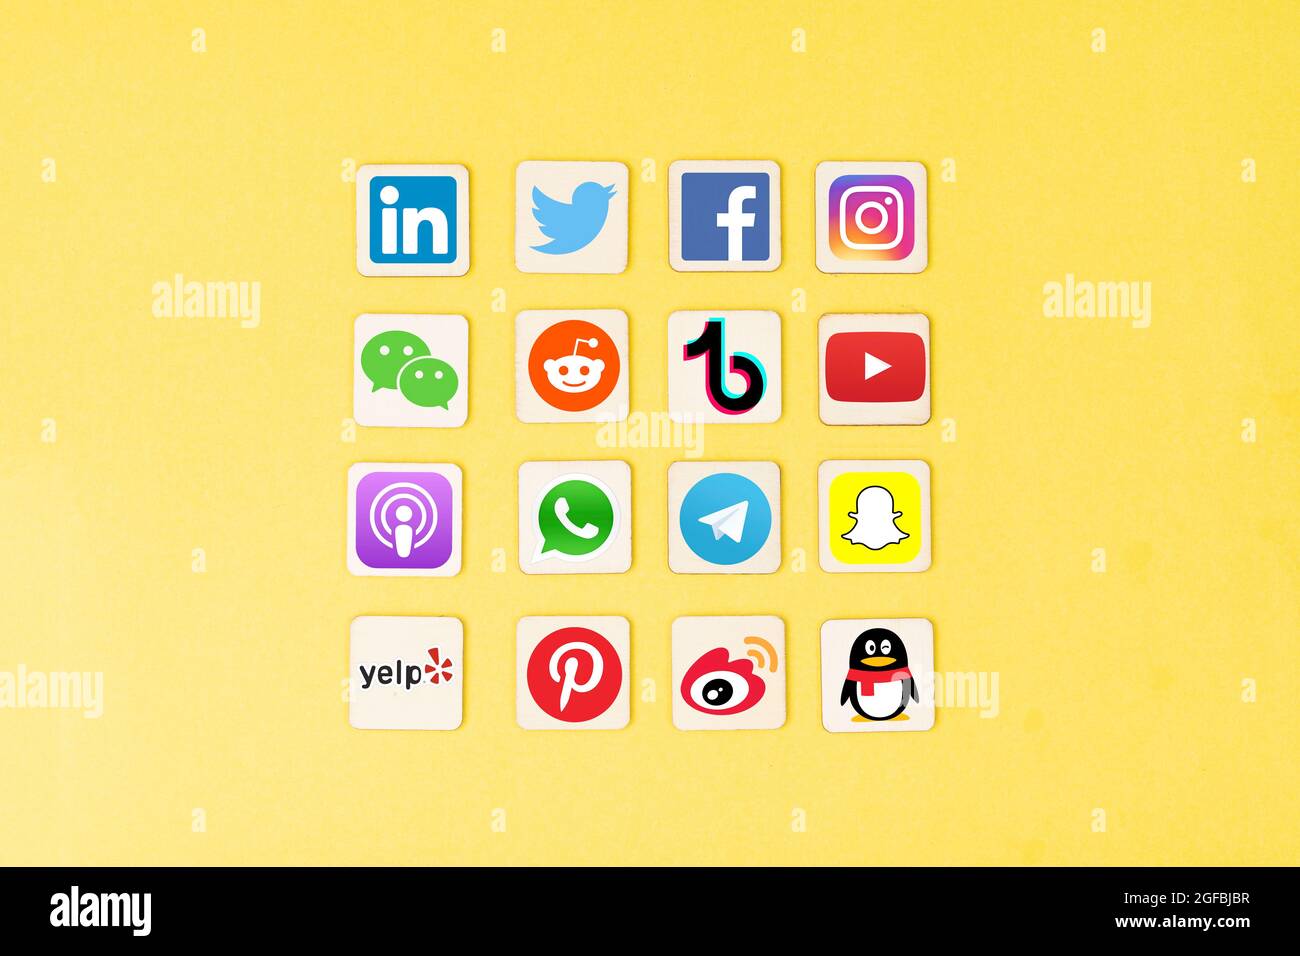 Symbole berühmter Social-Media-Apps, die weltweit verwendet werden. Socmed hat sich zu einer wichtigen Kommunikationsplattform für Nutzer entwickelt Stockfoto